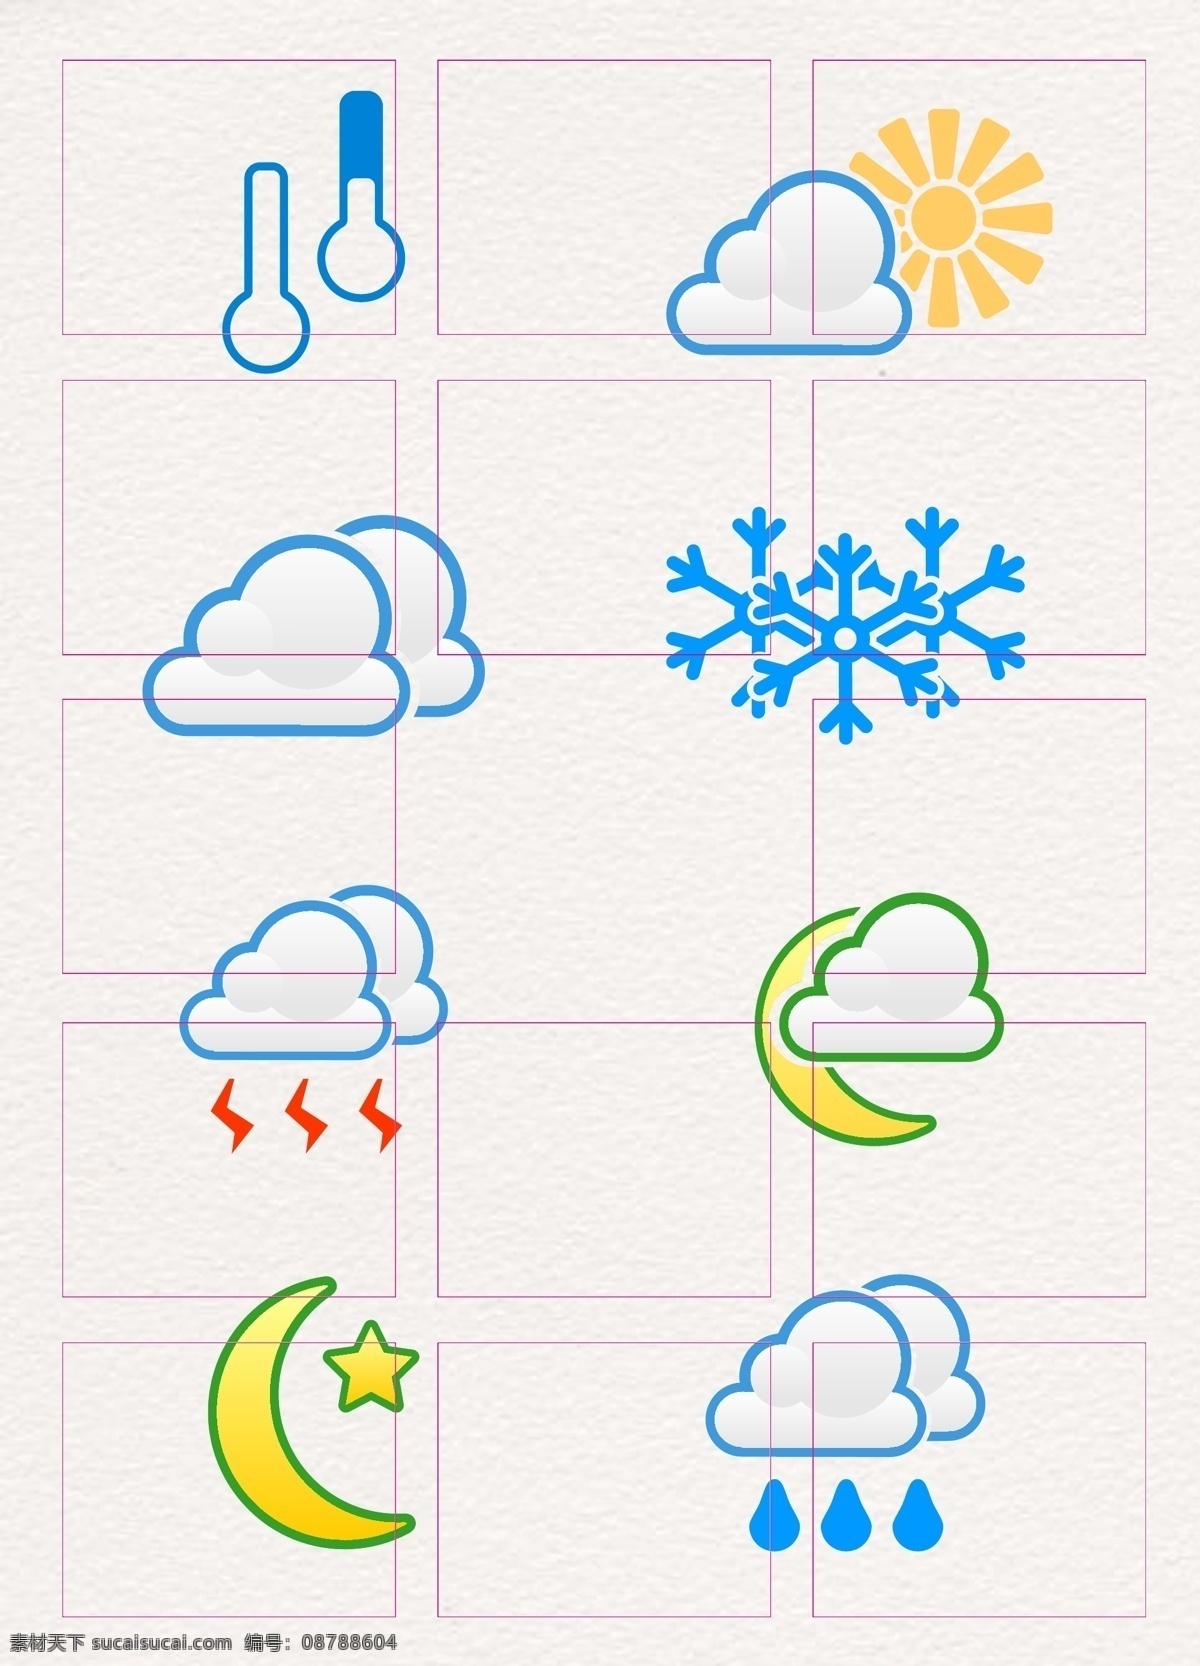 卡通 简约 天气预报 天气 图标 元素 矢量图 太阳 云 月亮 星星 天气图标 温度 雪 ai素材